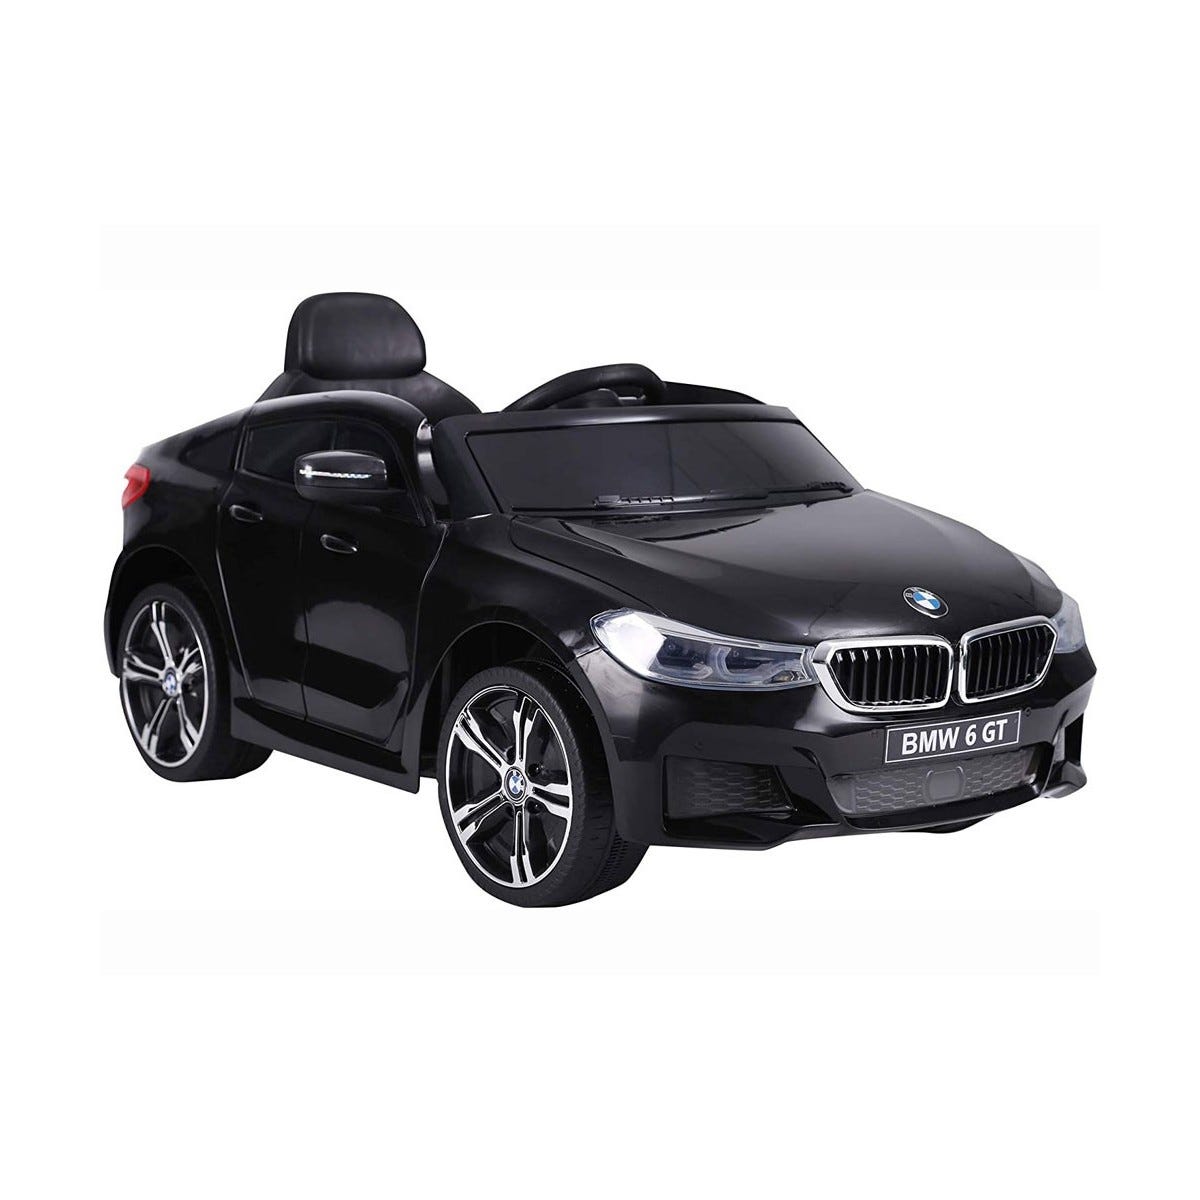 BMW 6 GT a Batteria Macchina Elettrica per Bambini Auto Macchinina